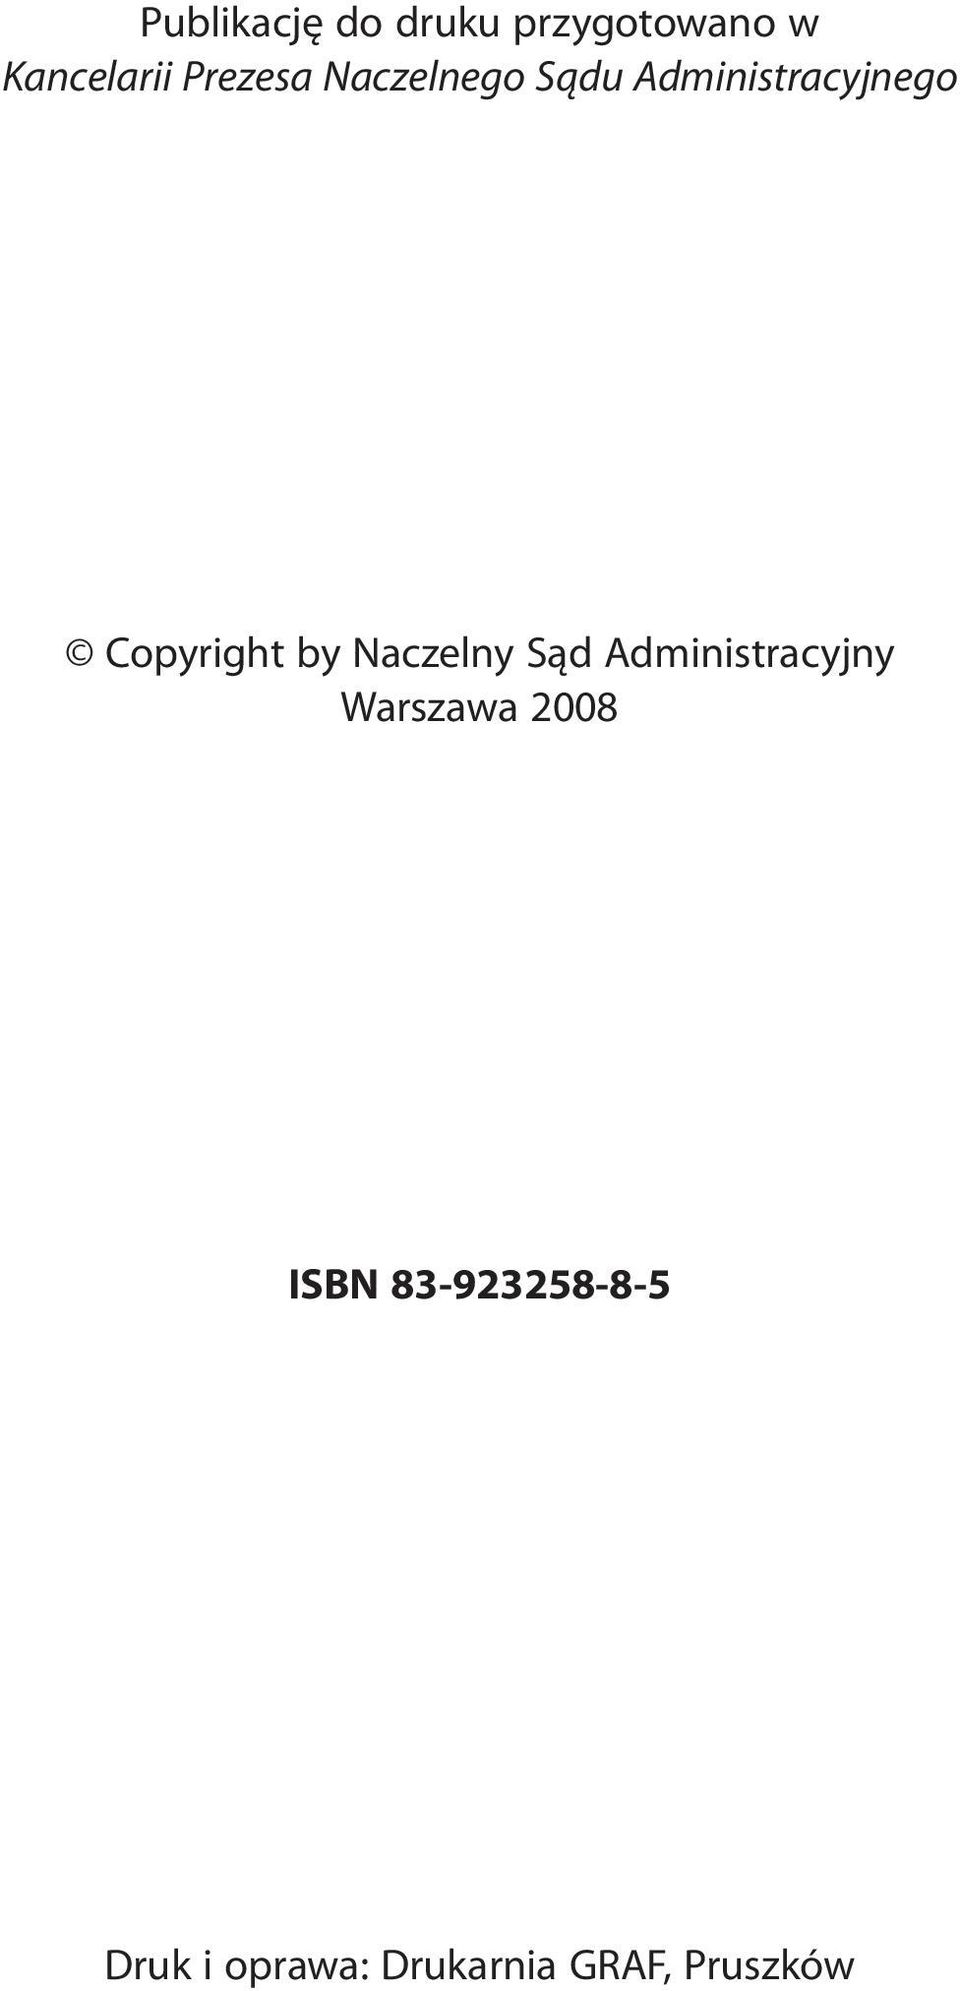 Copyright by Naczelny Sąd Administracyjny Warszawa